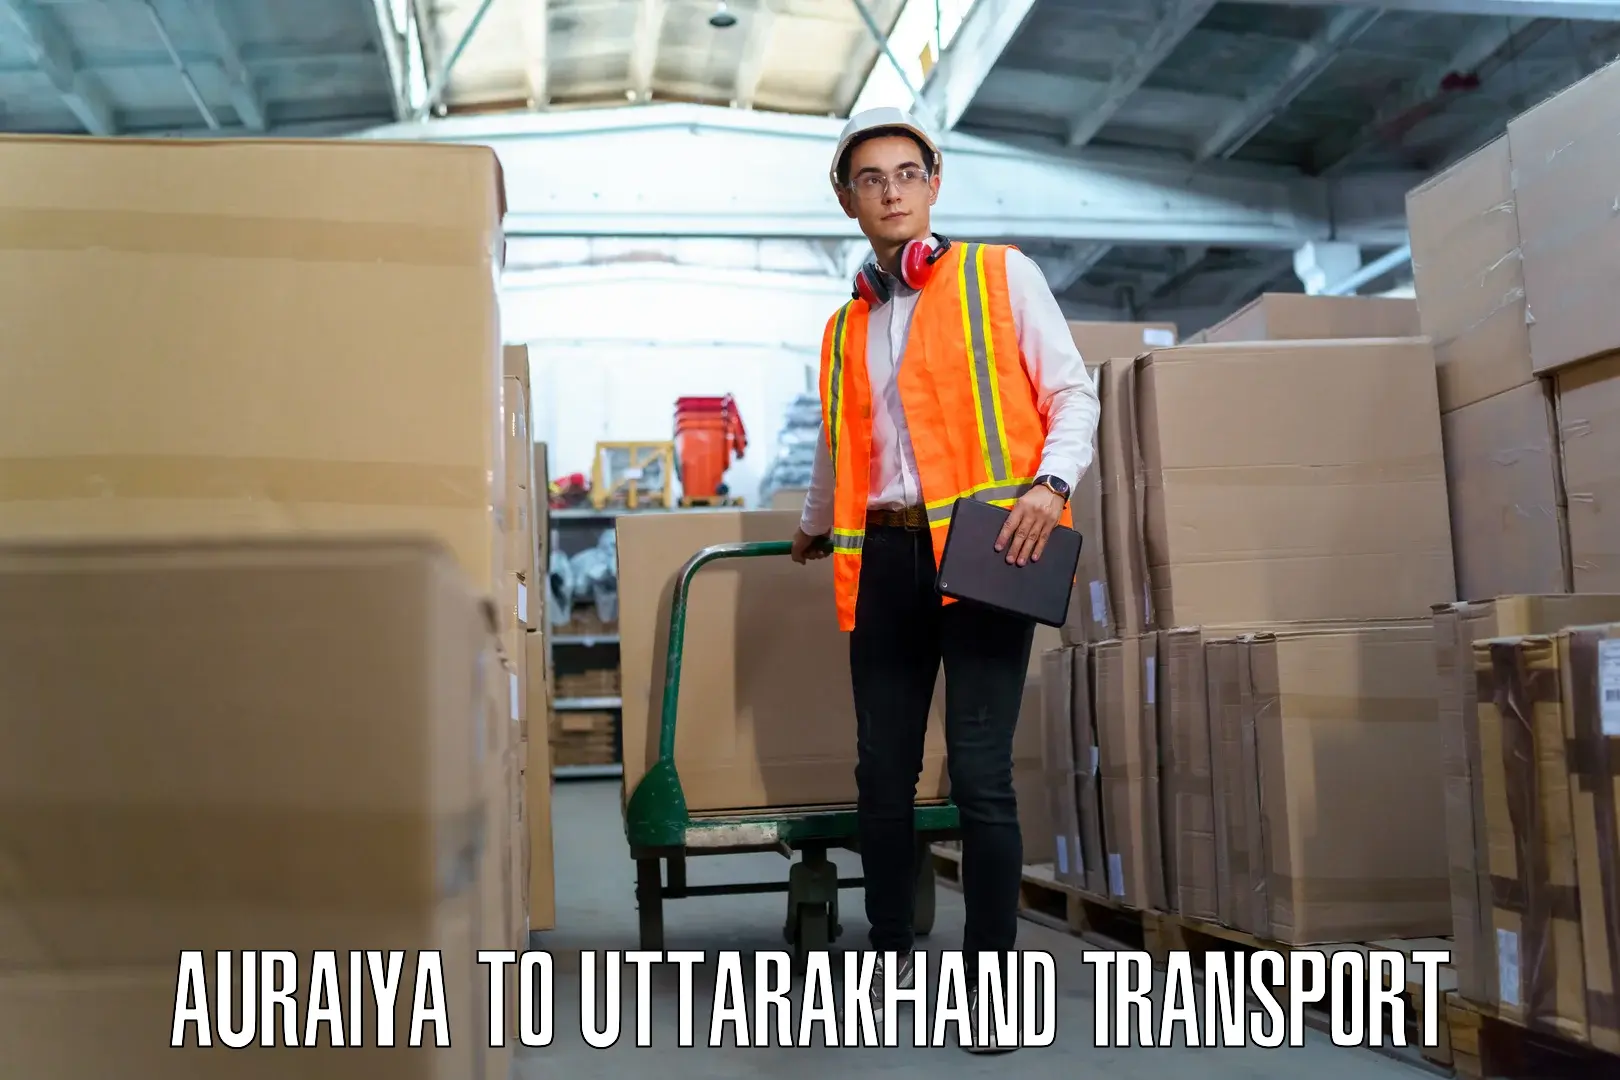 Daily transport service Auraiya to Uttarkashi